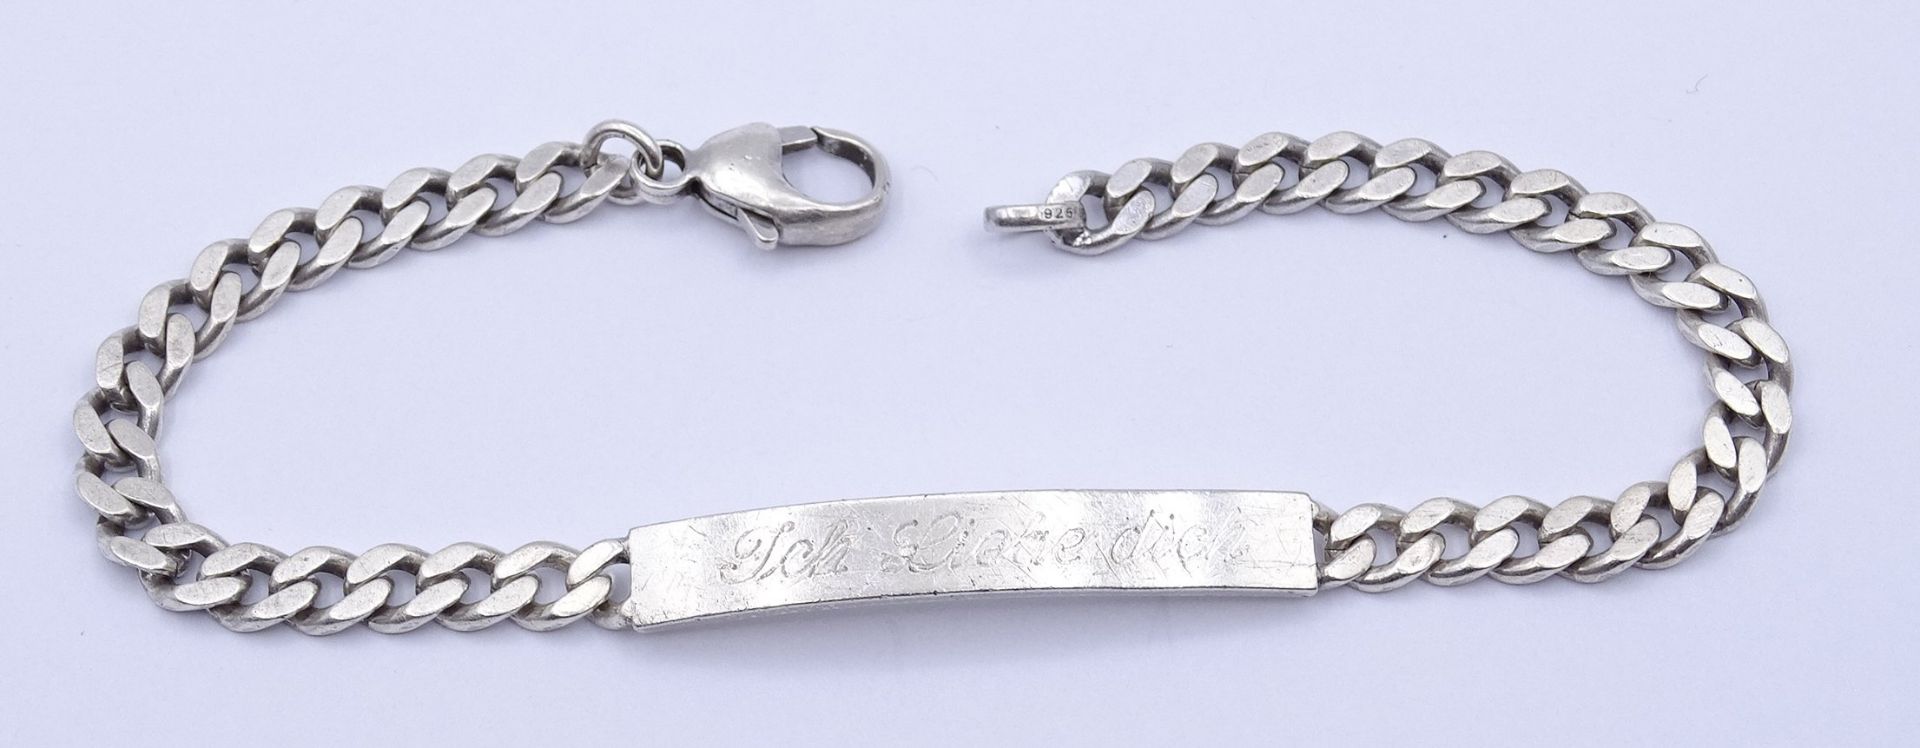 925er Silber Armband mit Gravur "Ich liebe dich - deine Maus", L. 22cm, 15,7g.